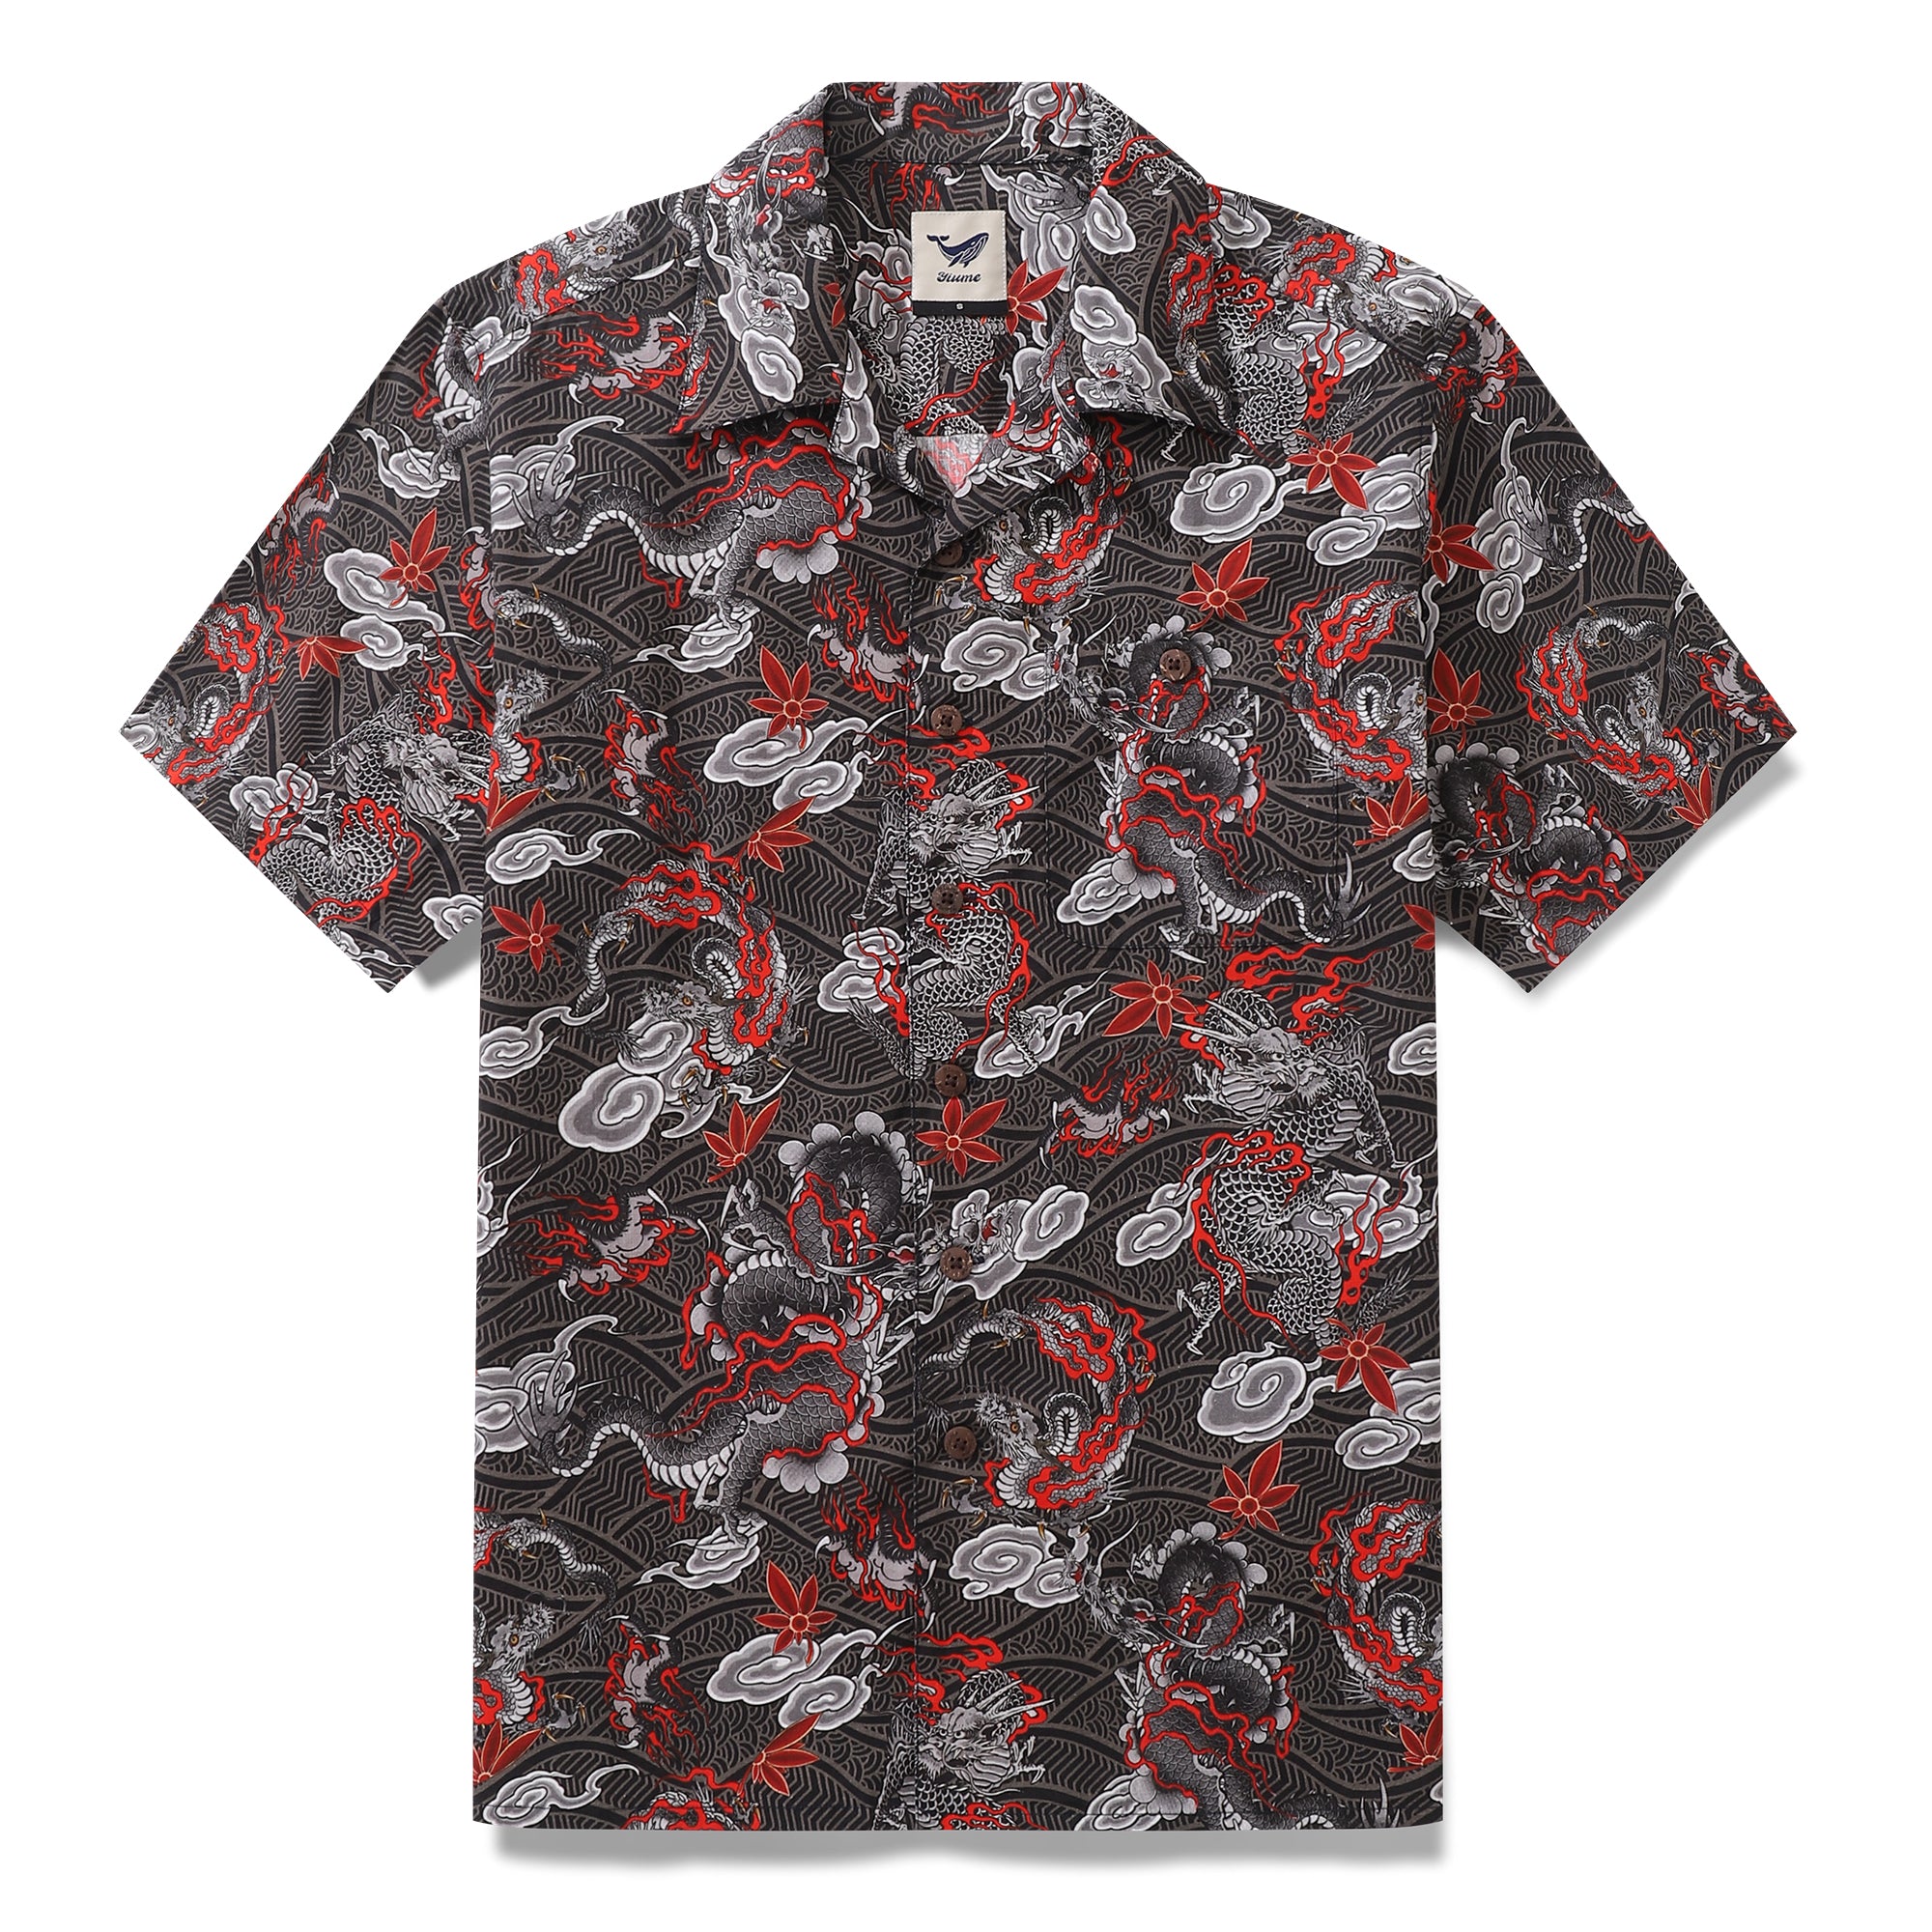 Men's Hawaiian Shirt The Dragon's Flight Print Cotton Camp Collar Shor ...